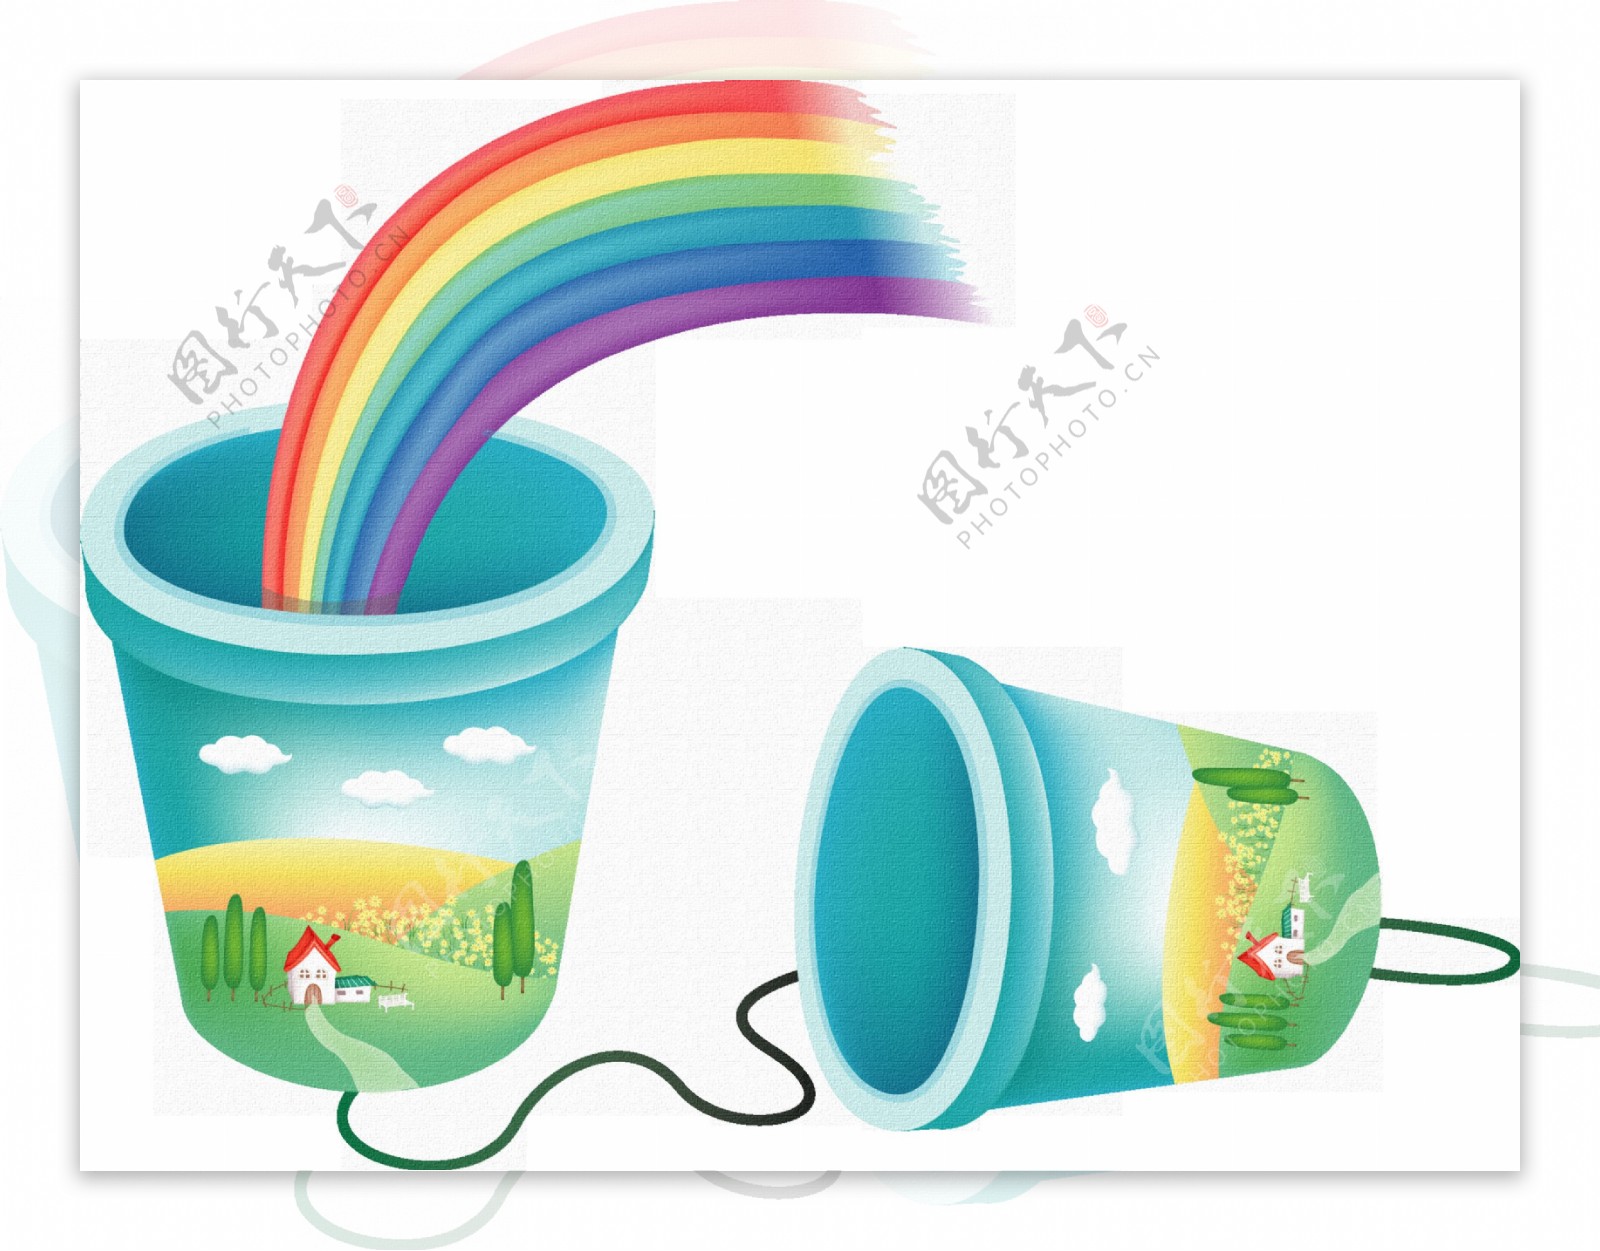 手绘两只塑料桶和彩虹透明素材